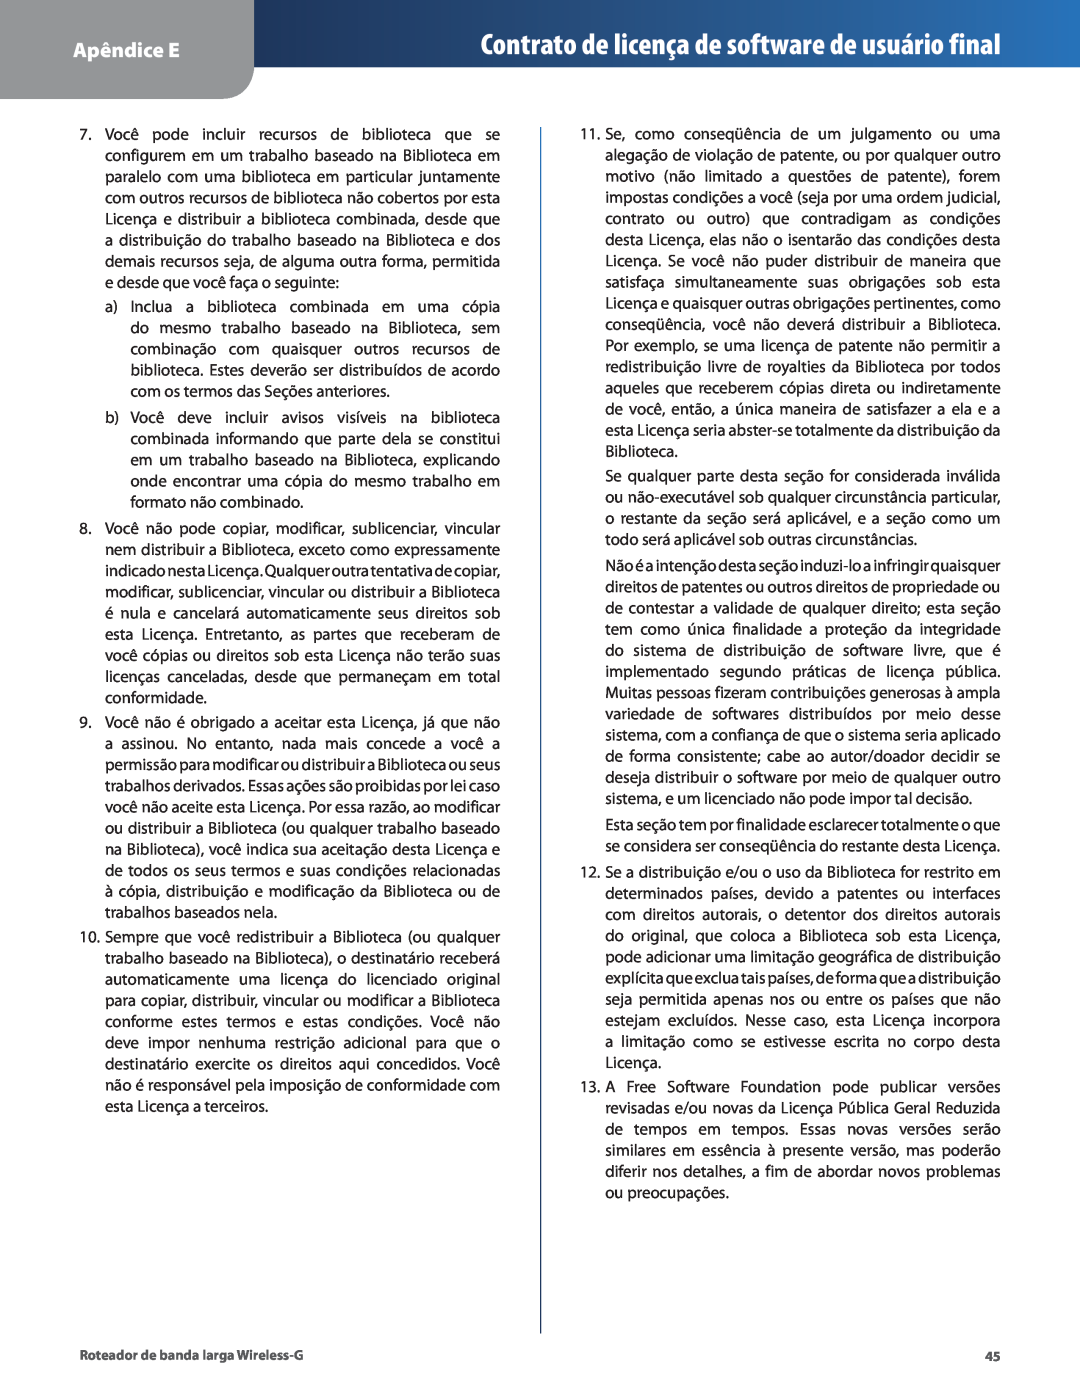 Cisco Systems WRT54G2 manual Contrato de licença de software de usuário final, Apêndice E 